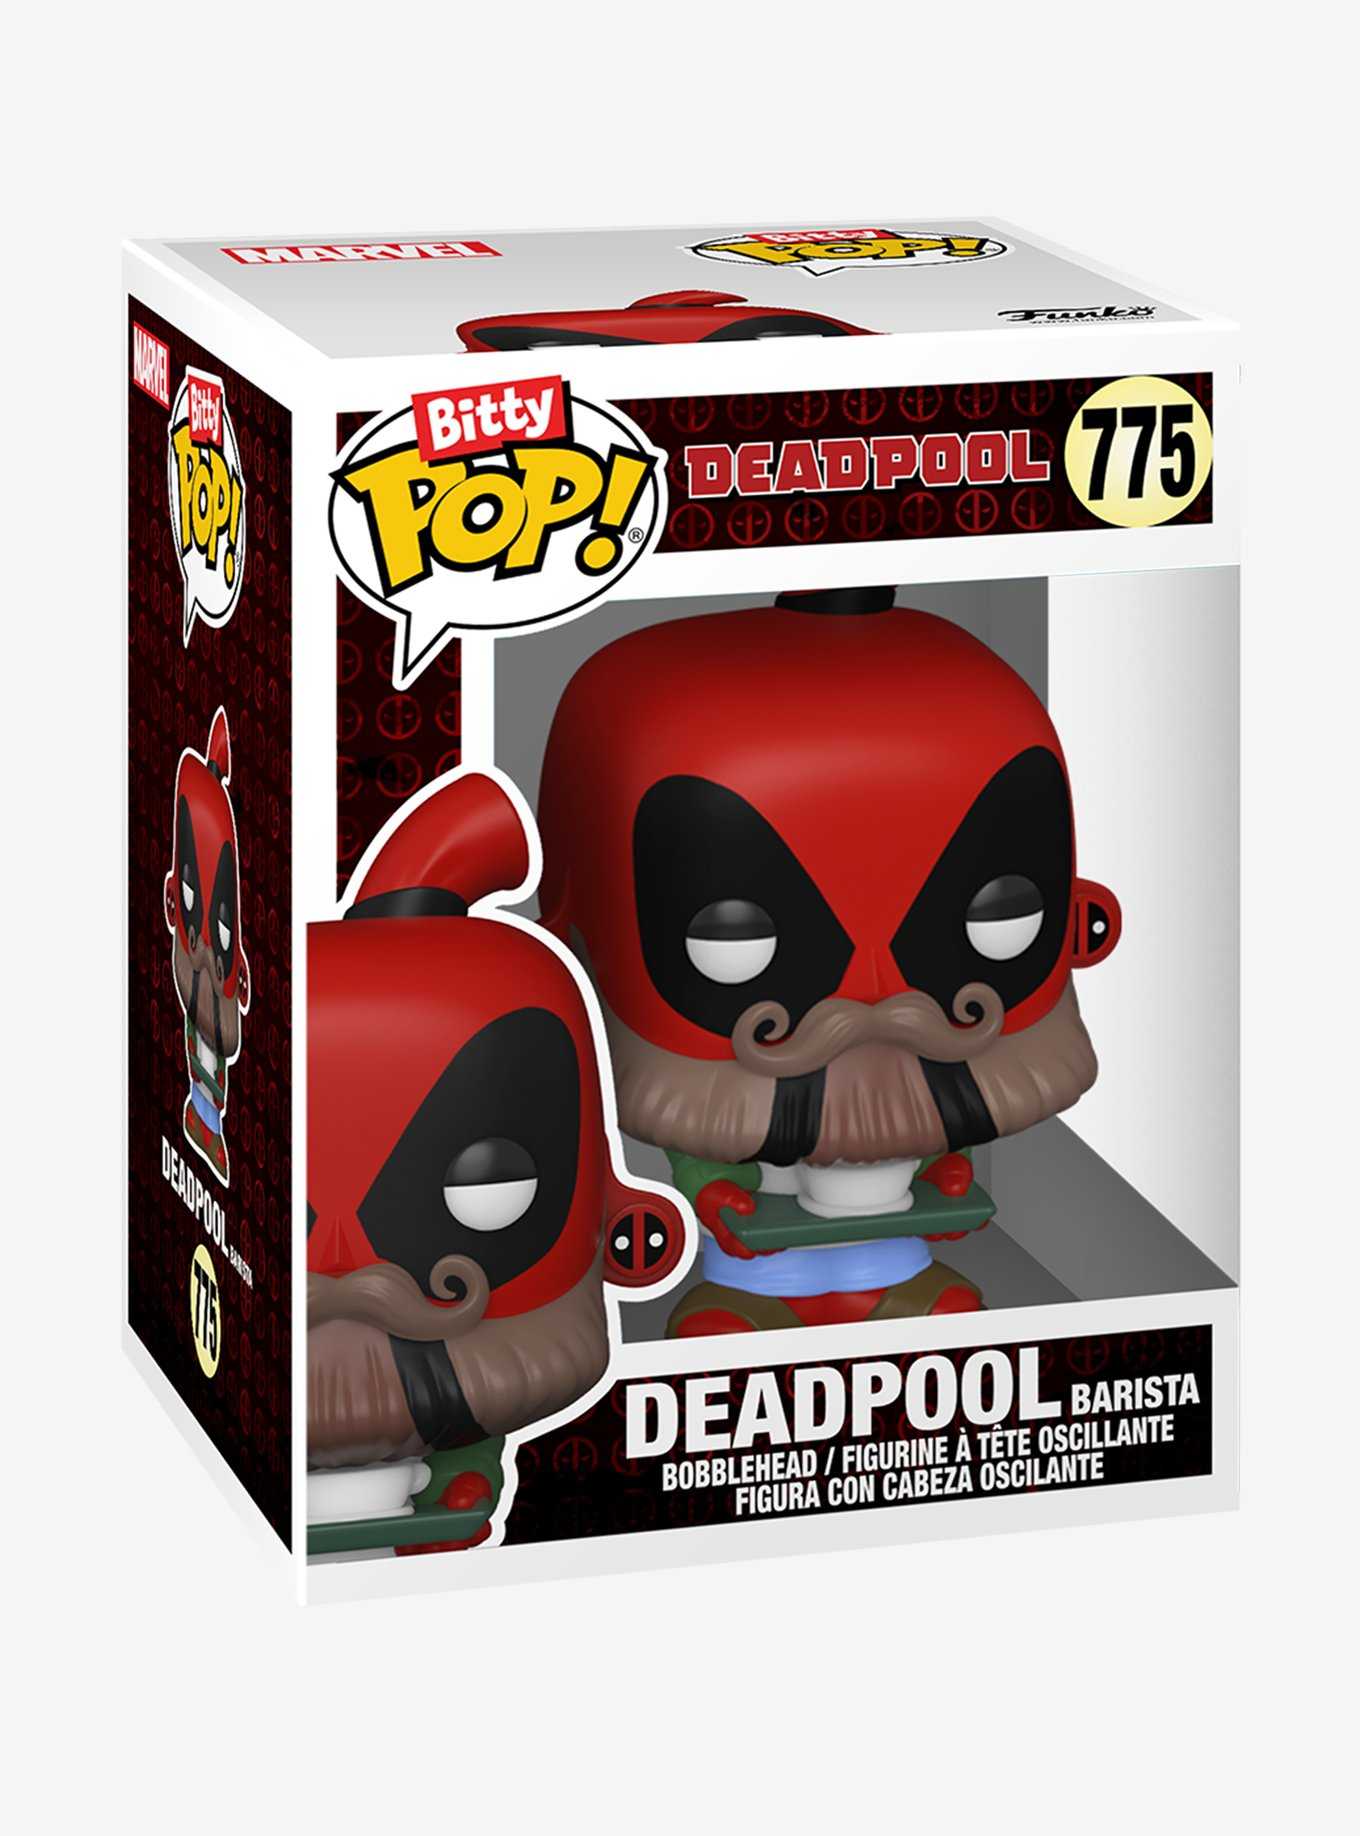 Funko Marvel Deadpool Bitty Pop! Dinopool Vinyl Figure Set, , hi-res